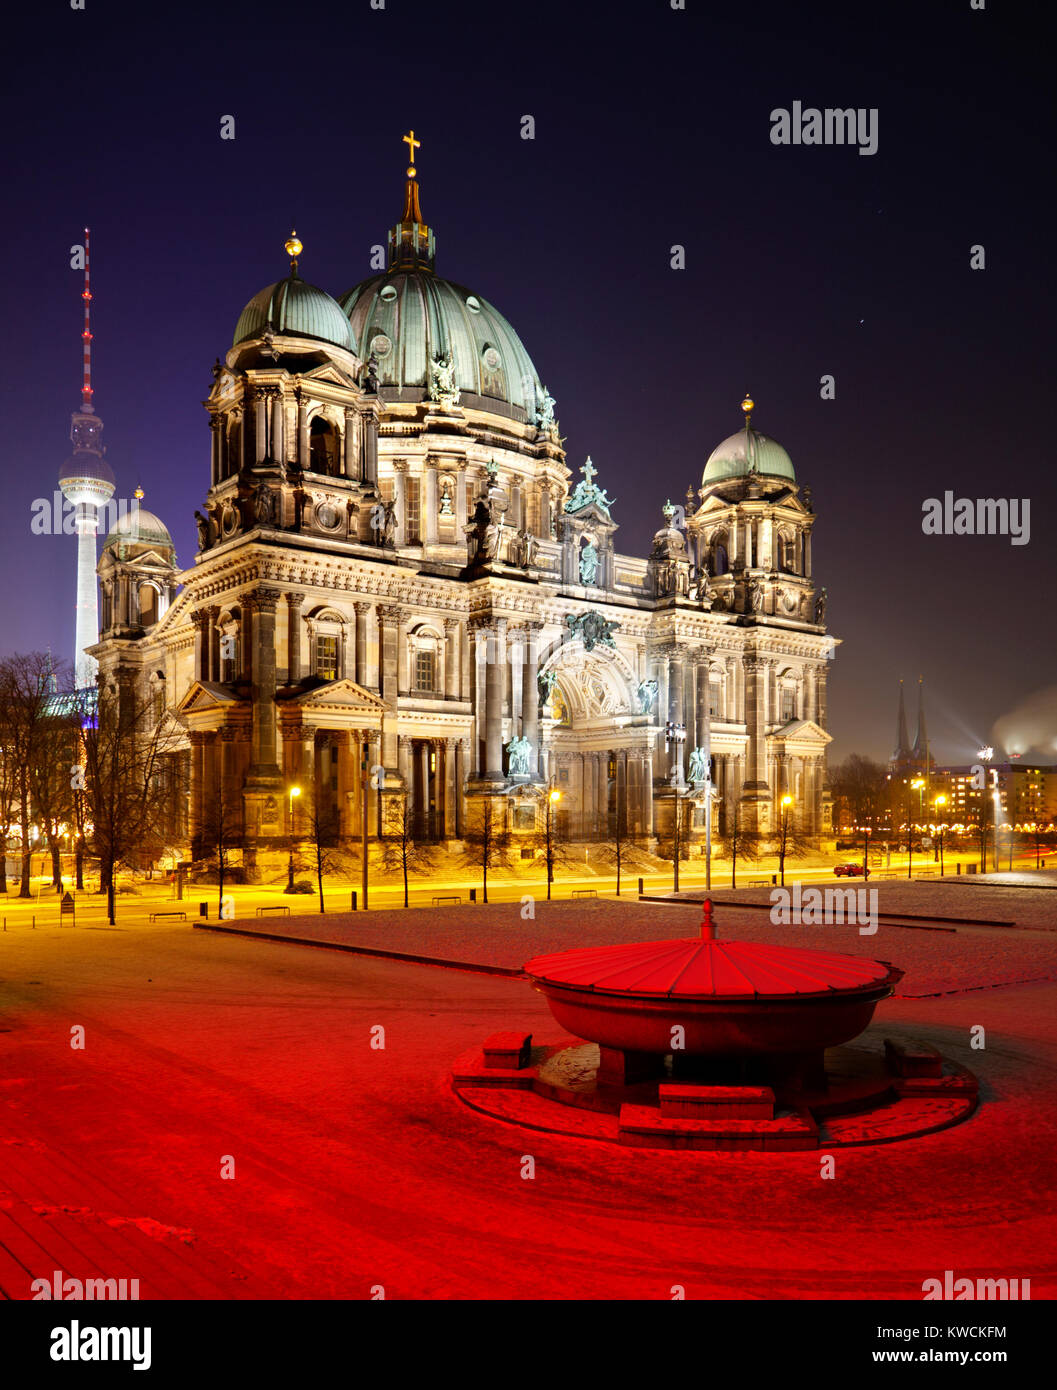 Photo de nuit de la cathédrale de Berlin avec l'avant-plan rouge. Banque D'Images